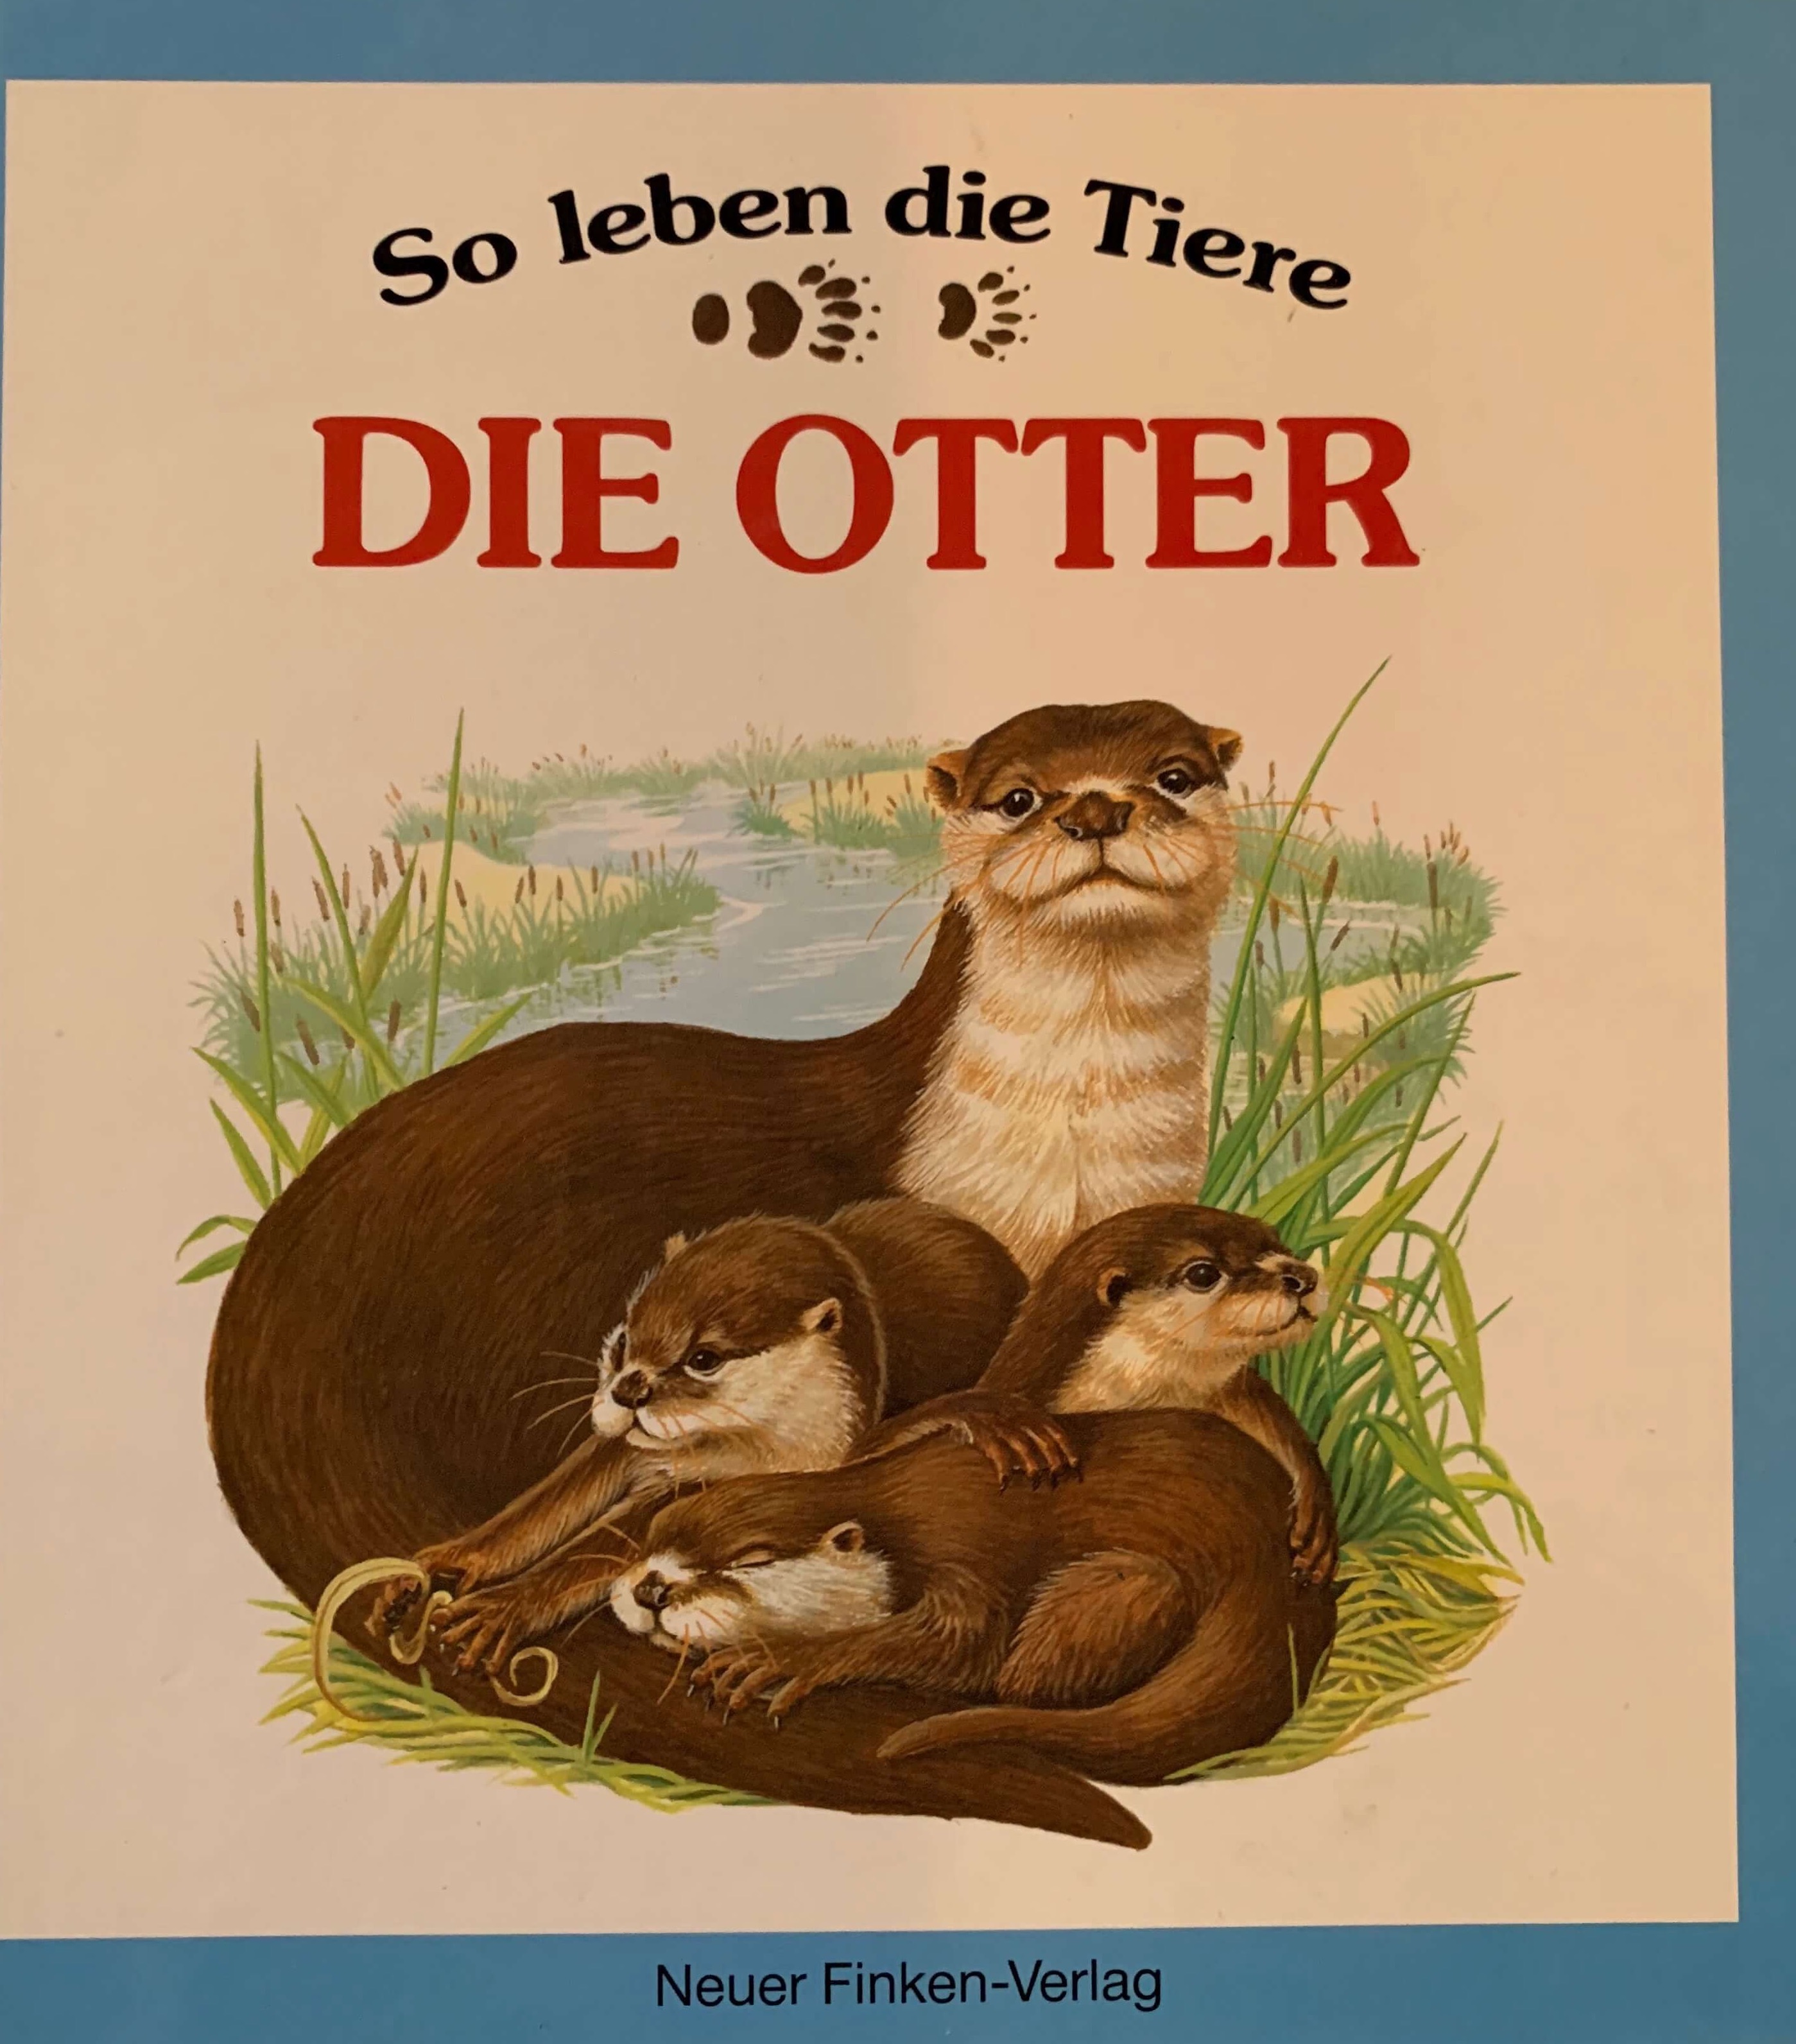 So leben die Tiere - Die Otter